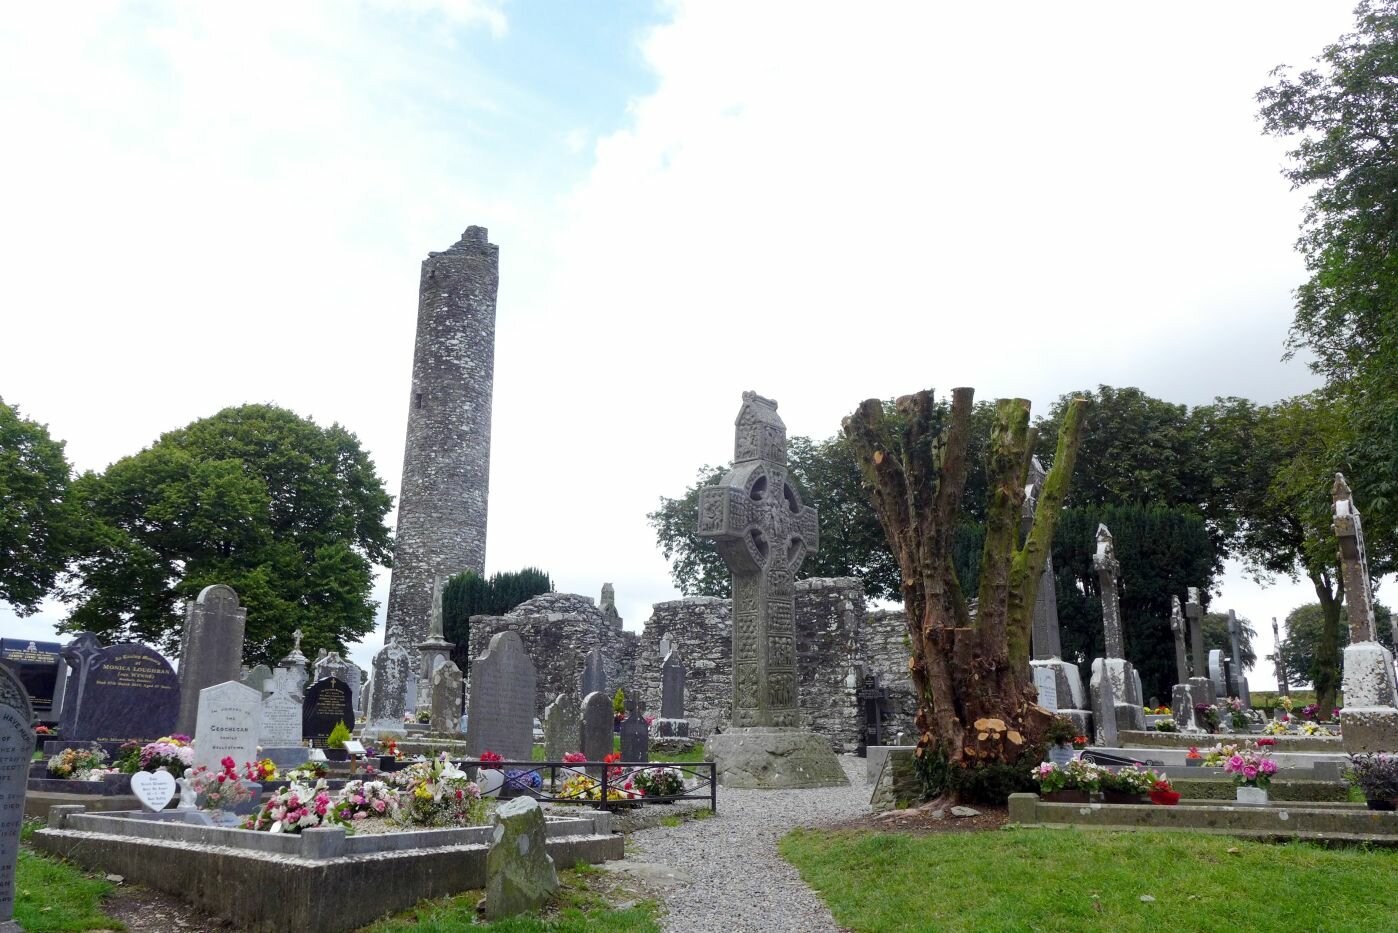 Lungo il Mare d'Irlanda - Monasterboice - Area cimiteriale con la torre rotonda